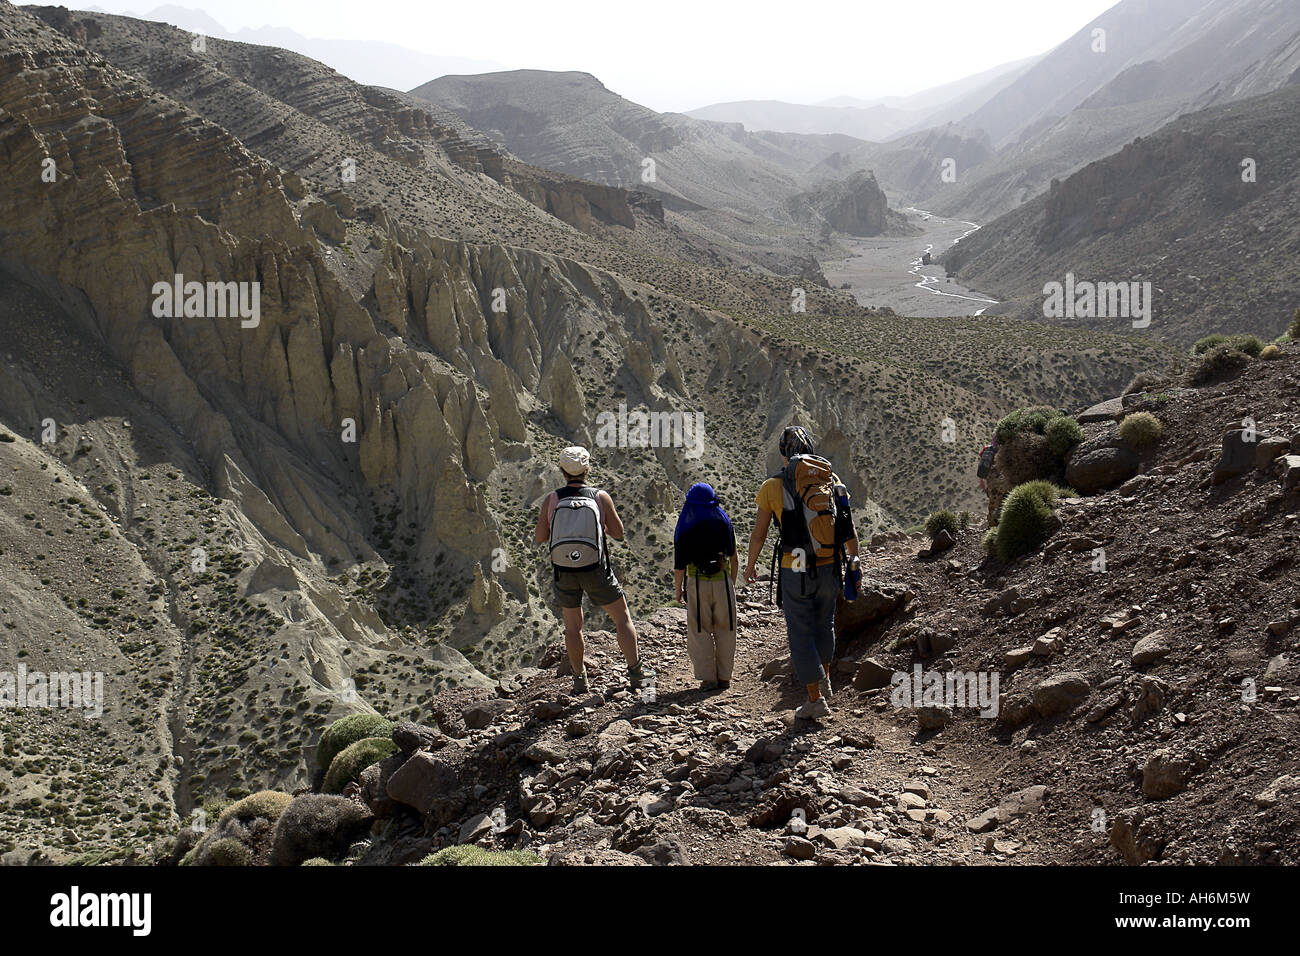 Los excursionistas en el valle de Oulilimt Región Alto Atlas de Marruecos Foto de stock